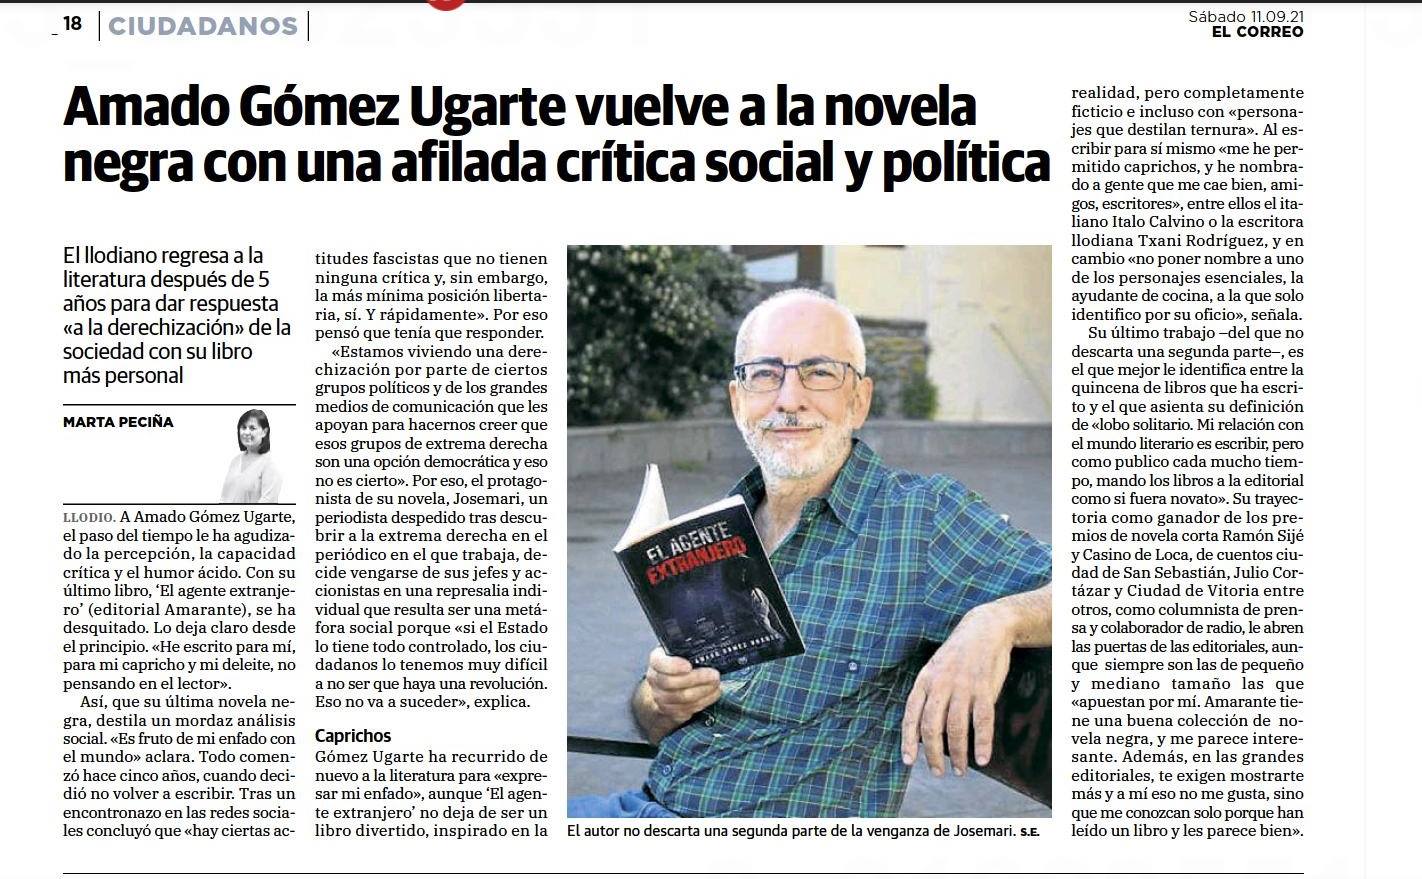 Amado Gómez Ugarte vuelve a la novela con una afilada crítica social y política